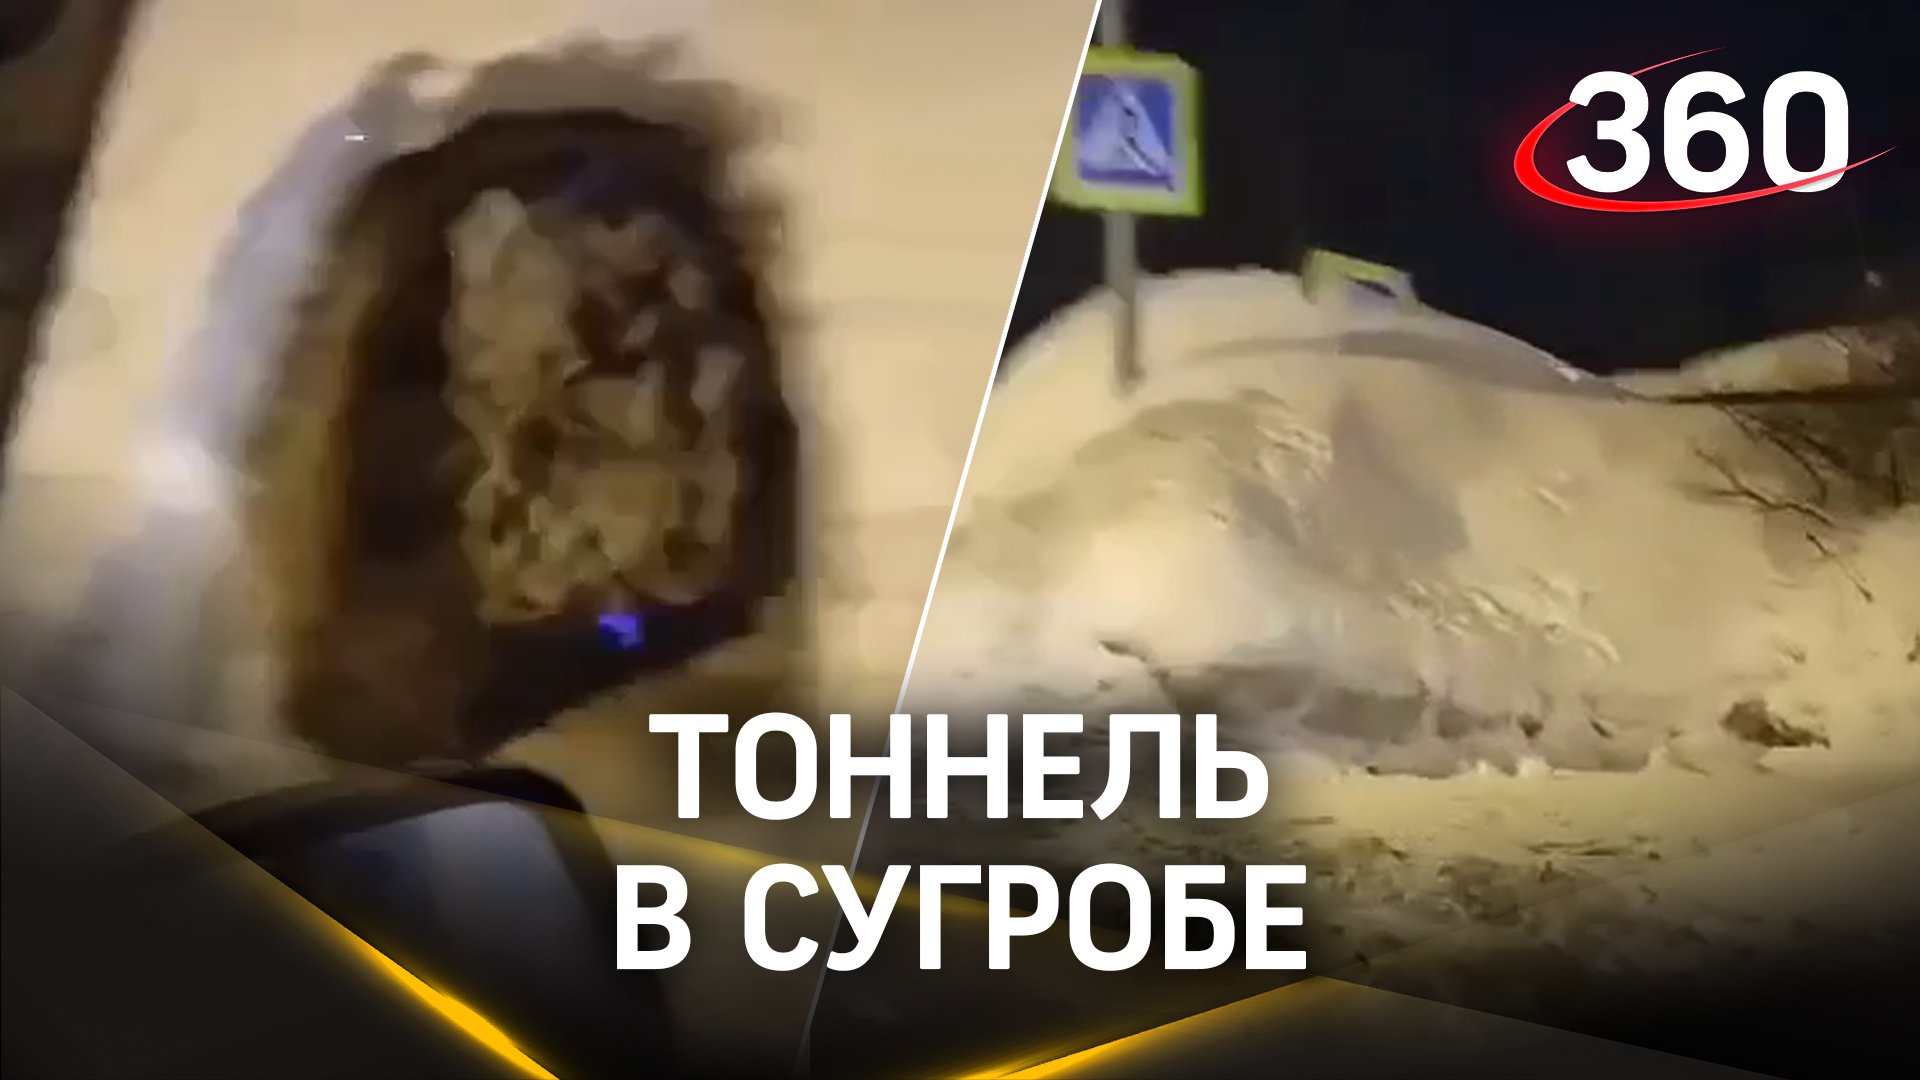 Снежные ноу-хау в Наро-Фоминске: кто-то вырыл тоннель в сугробе, чтобы выходить через него